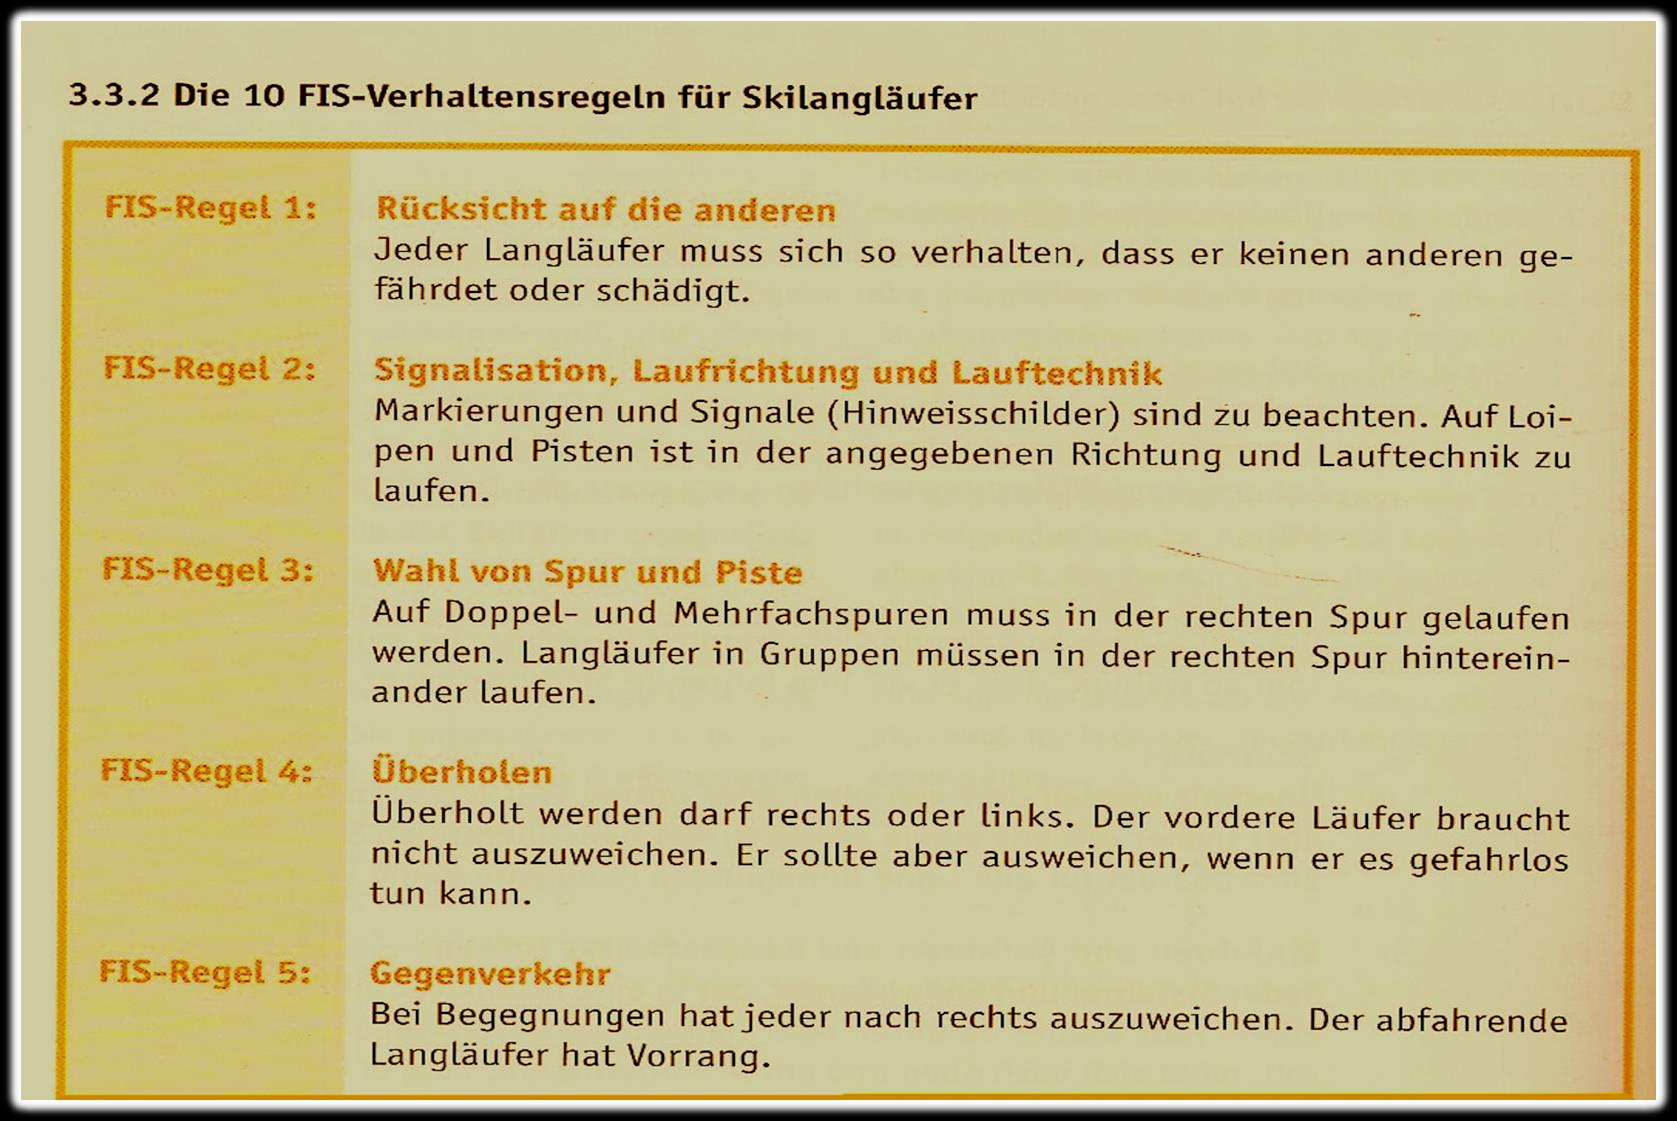 FIS-Regeln für Skilangläufer Deutscher Skiverband (2010).